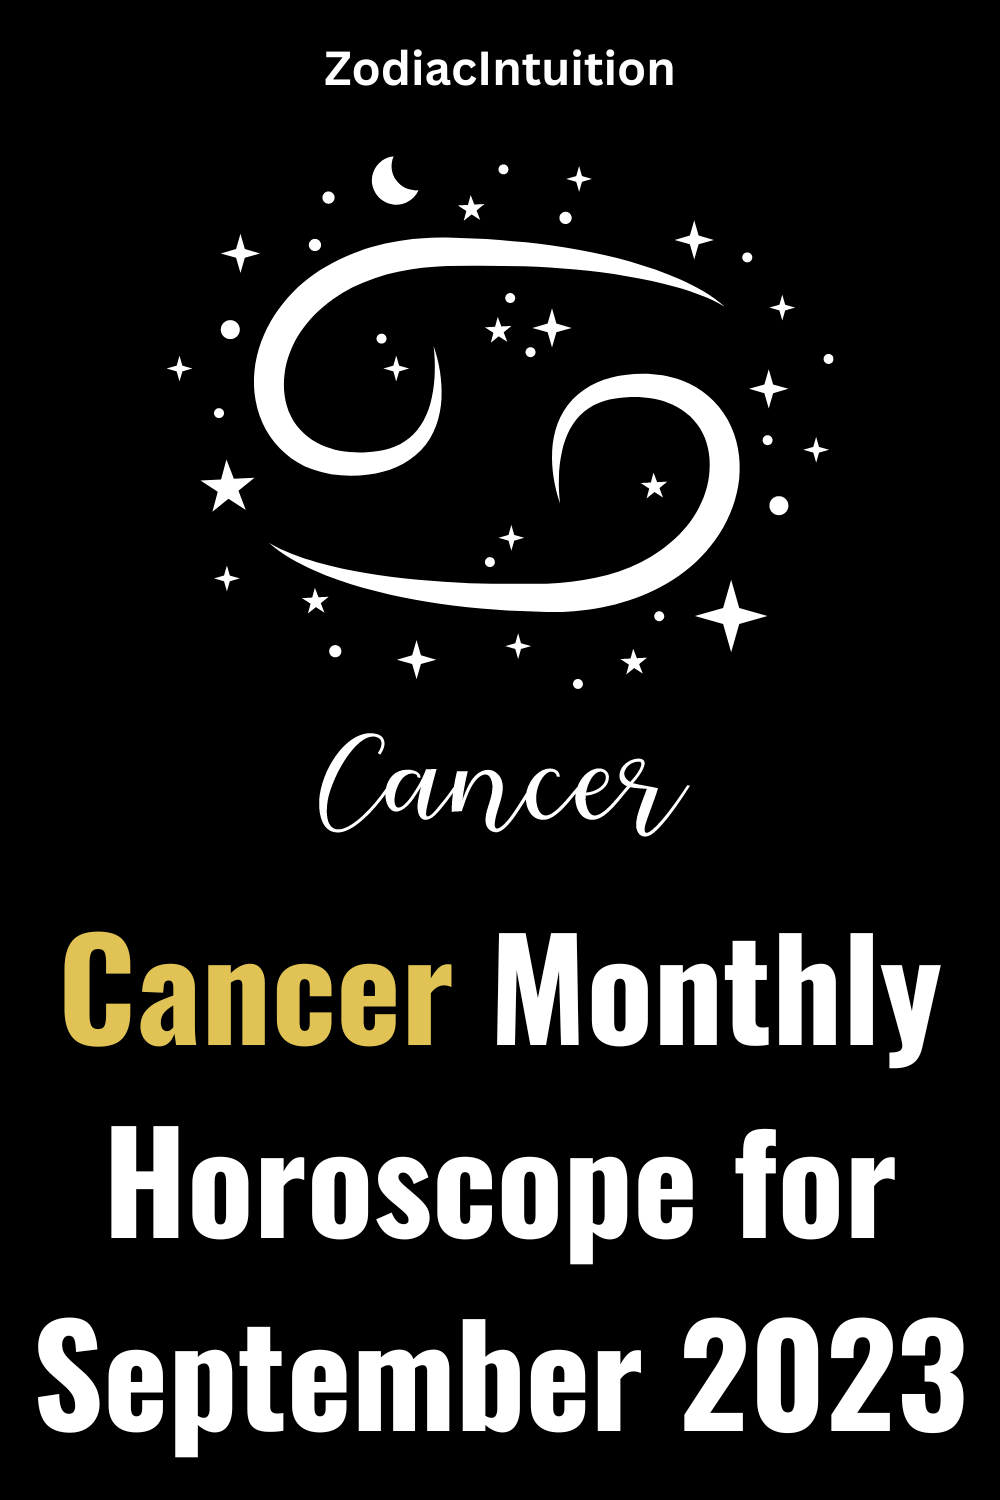 Cancer Monthly Horoscope for September 2023